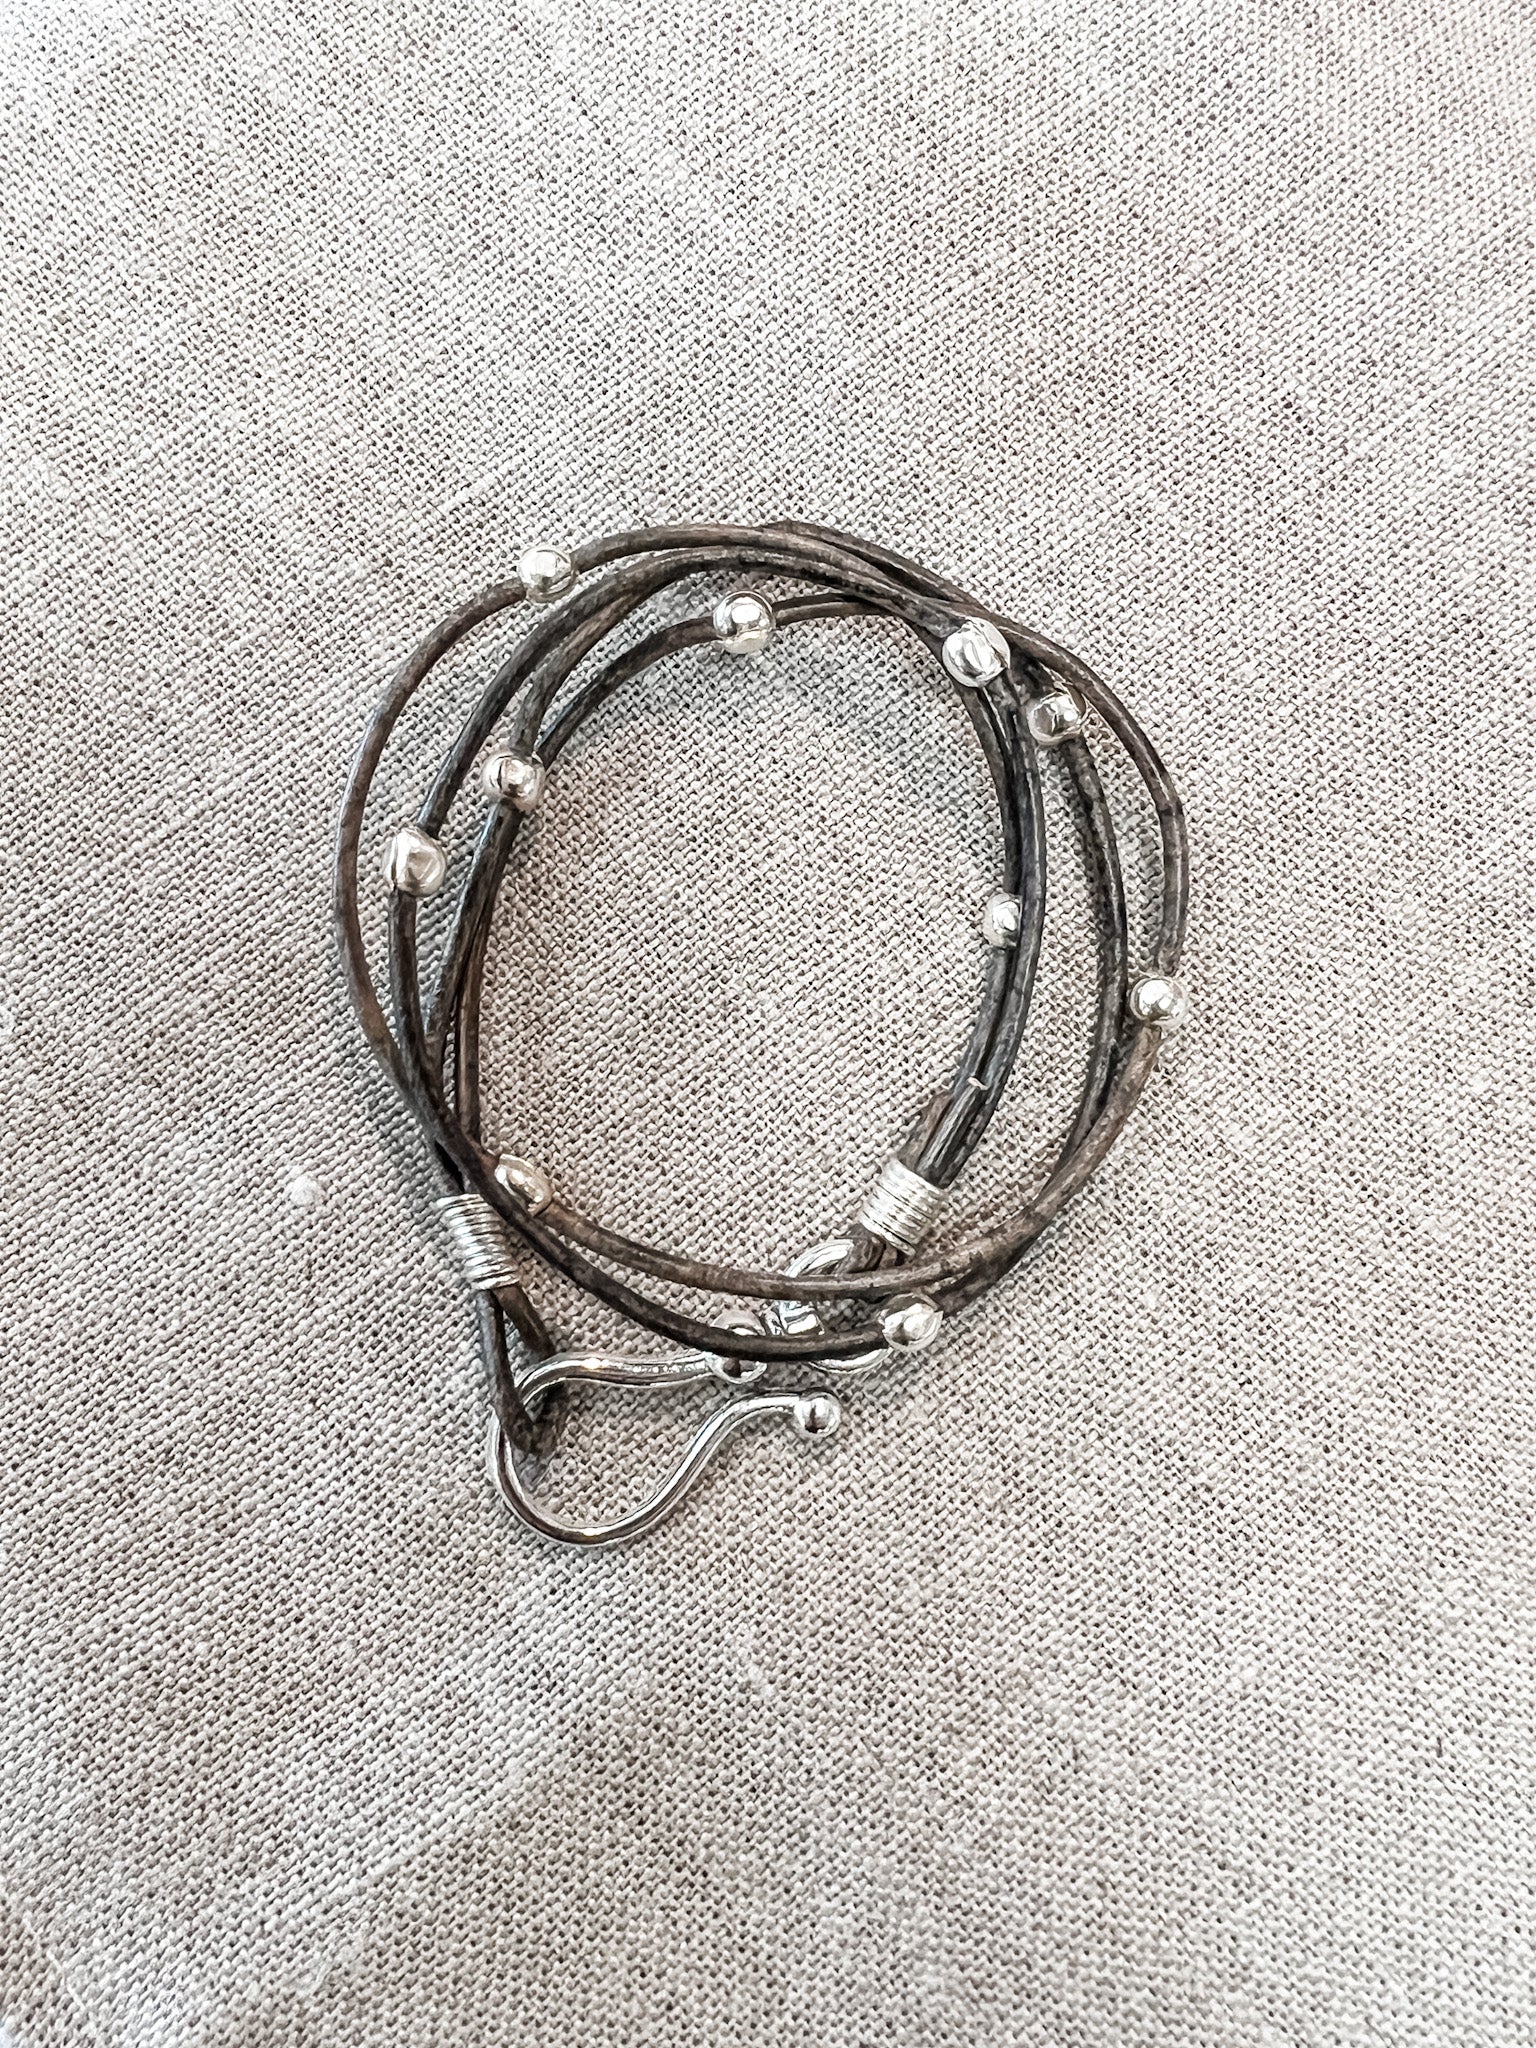 Double Leather Hook Wrap Bracelet/Choker